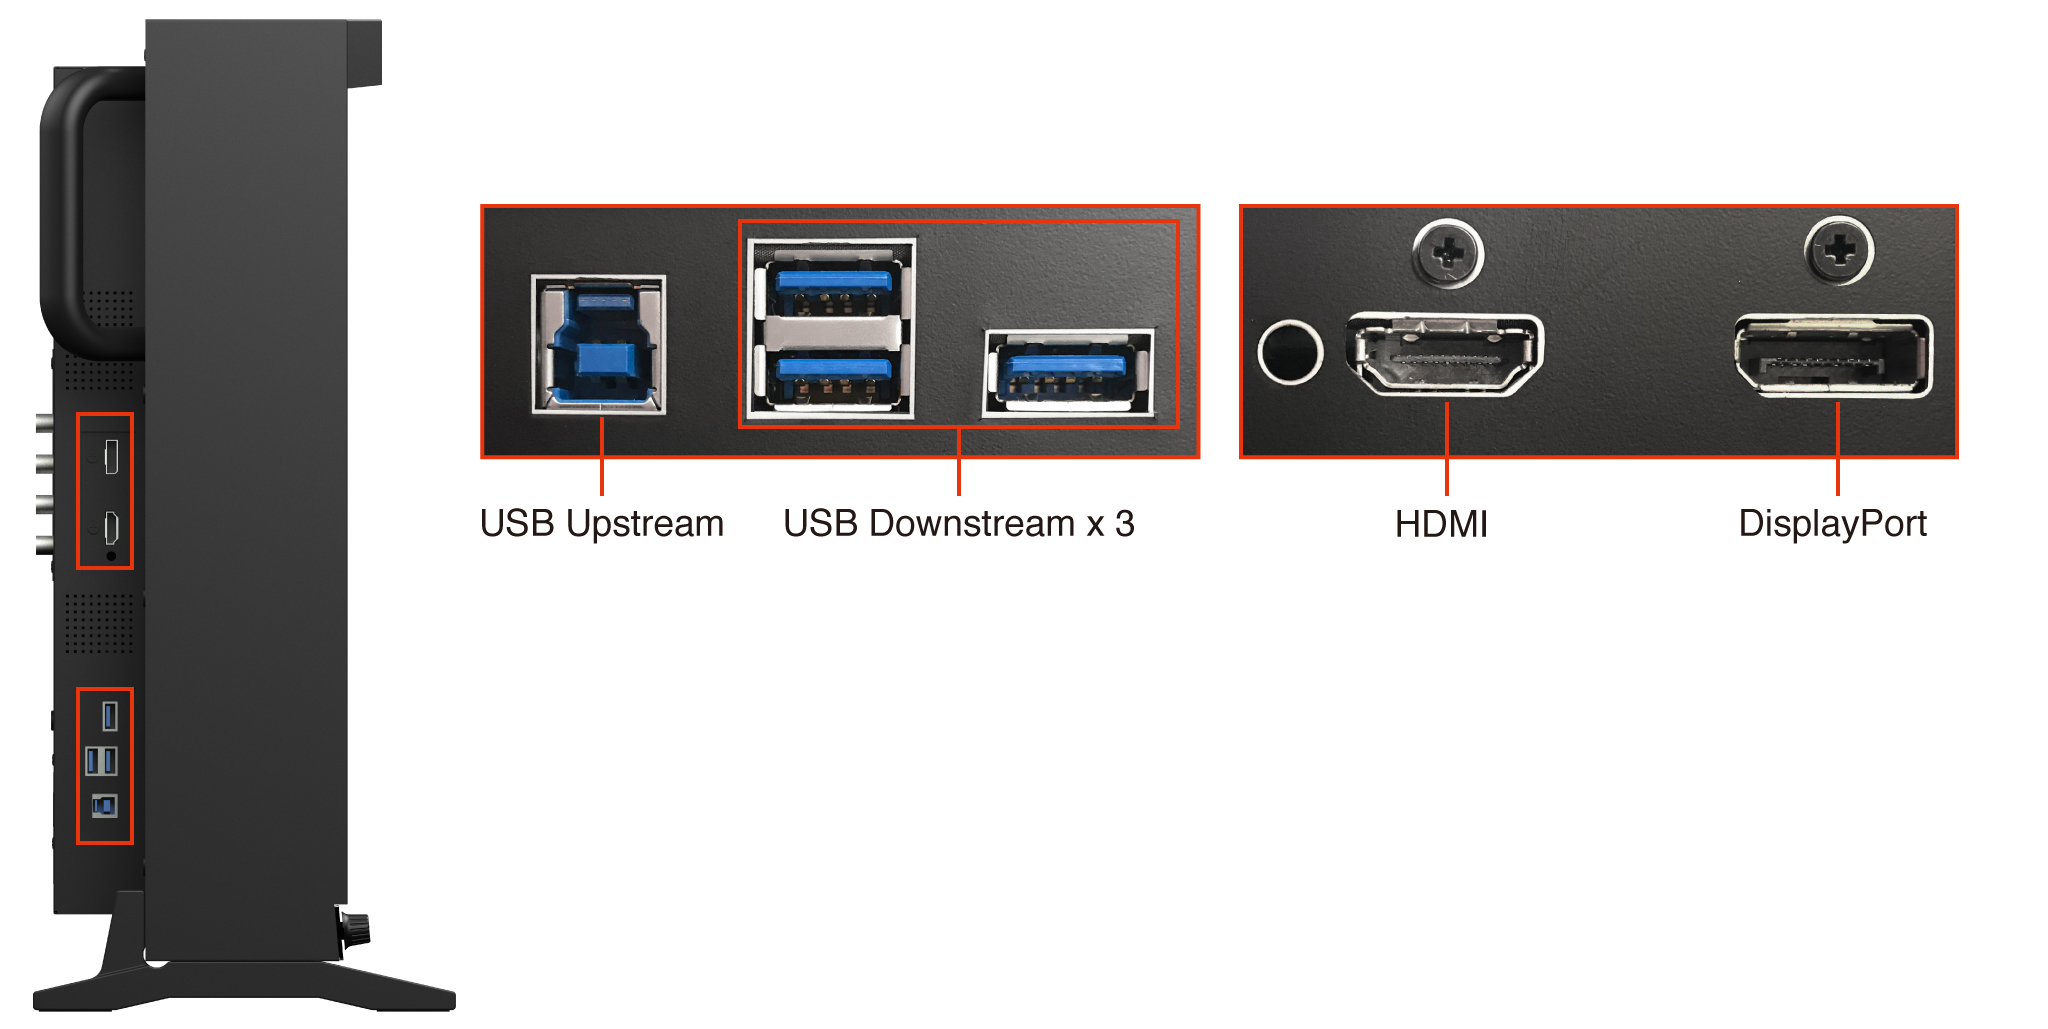 Entradas HDMI y DisplayPort